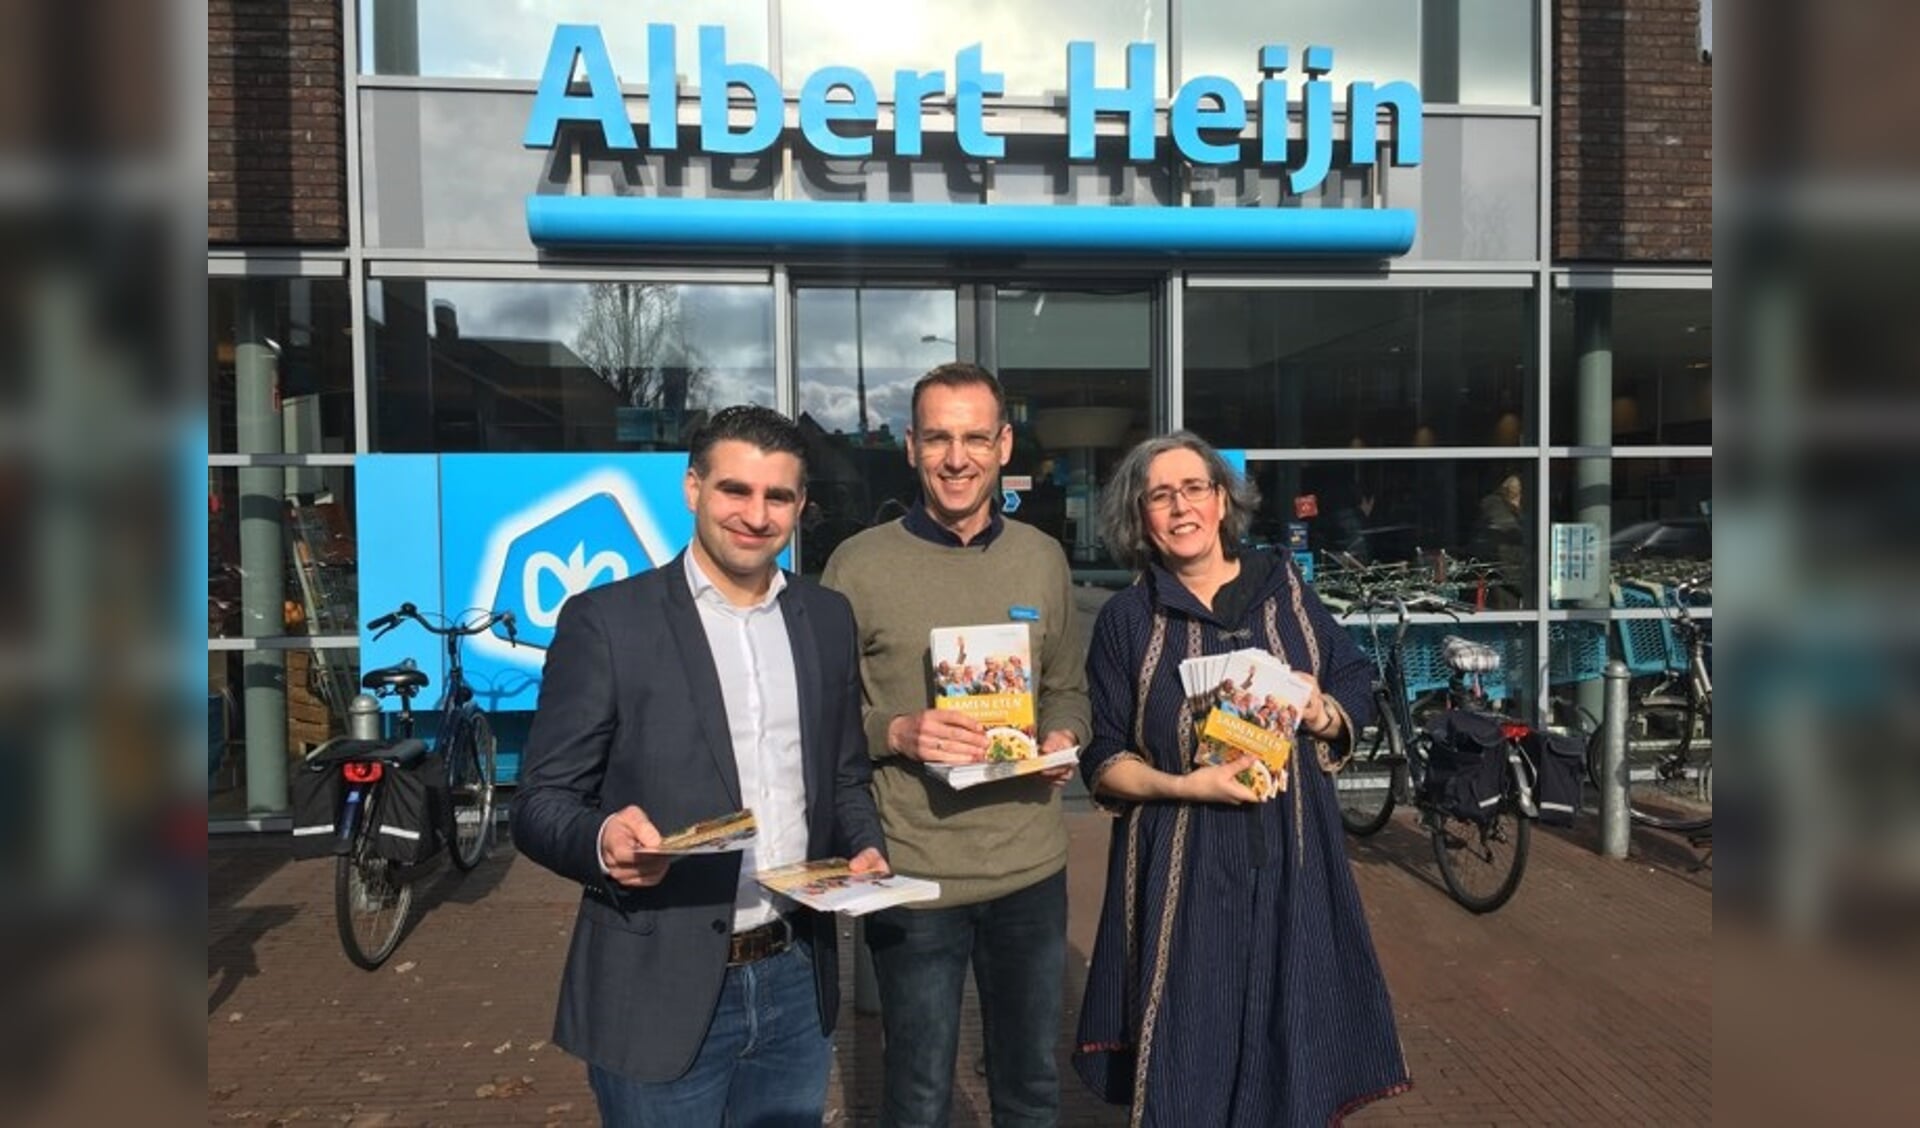 Marcel 't Hoen, Ronald Advokaat en Ellenoor Piersma met de folder van de actie.